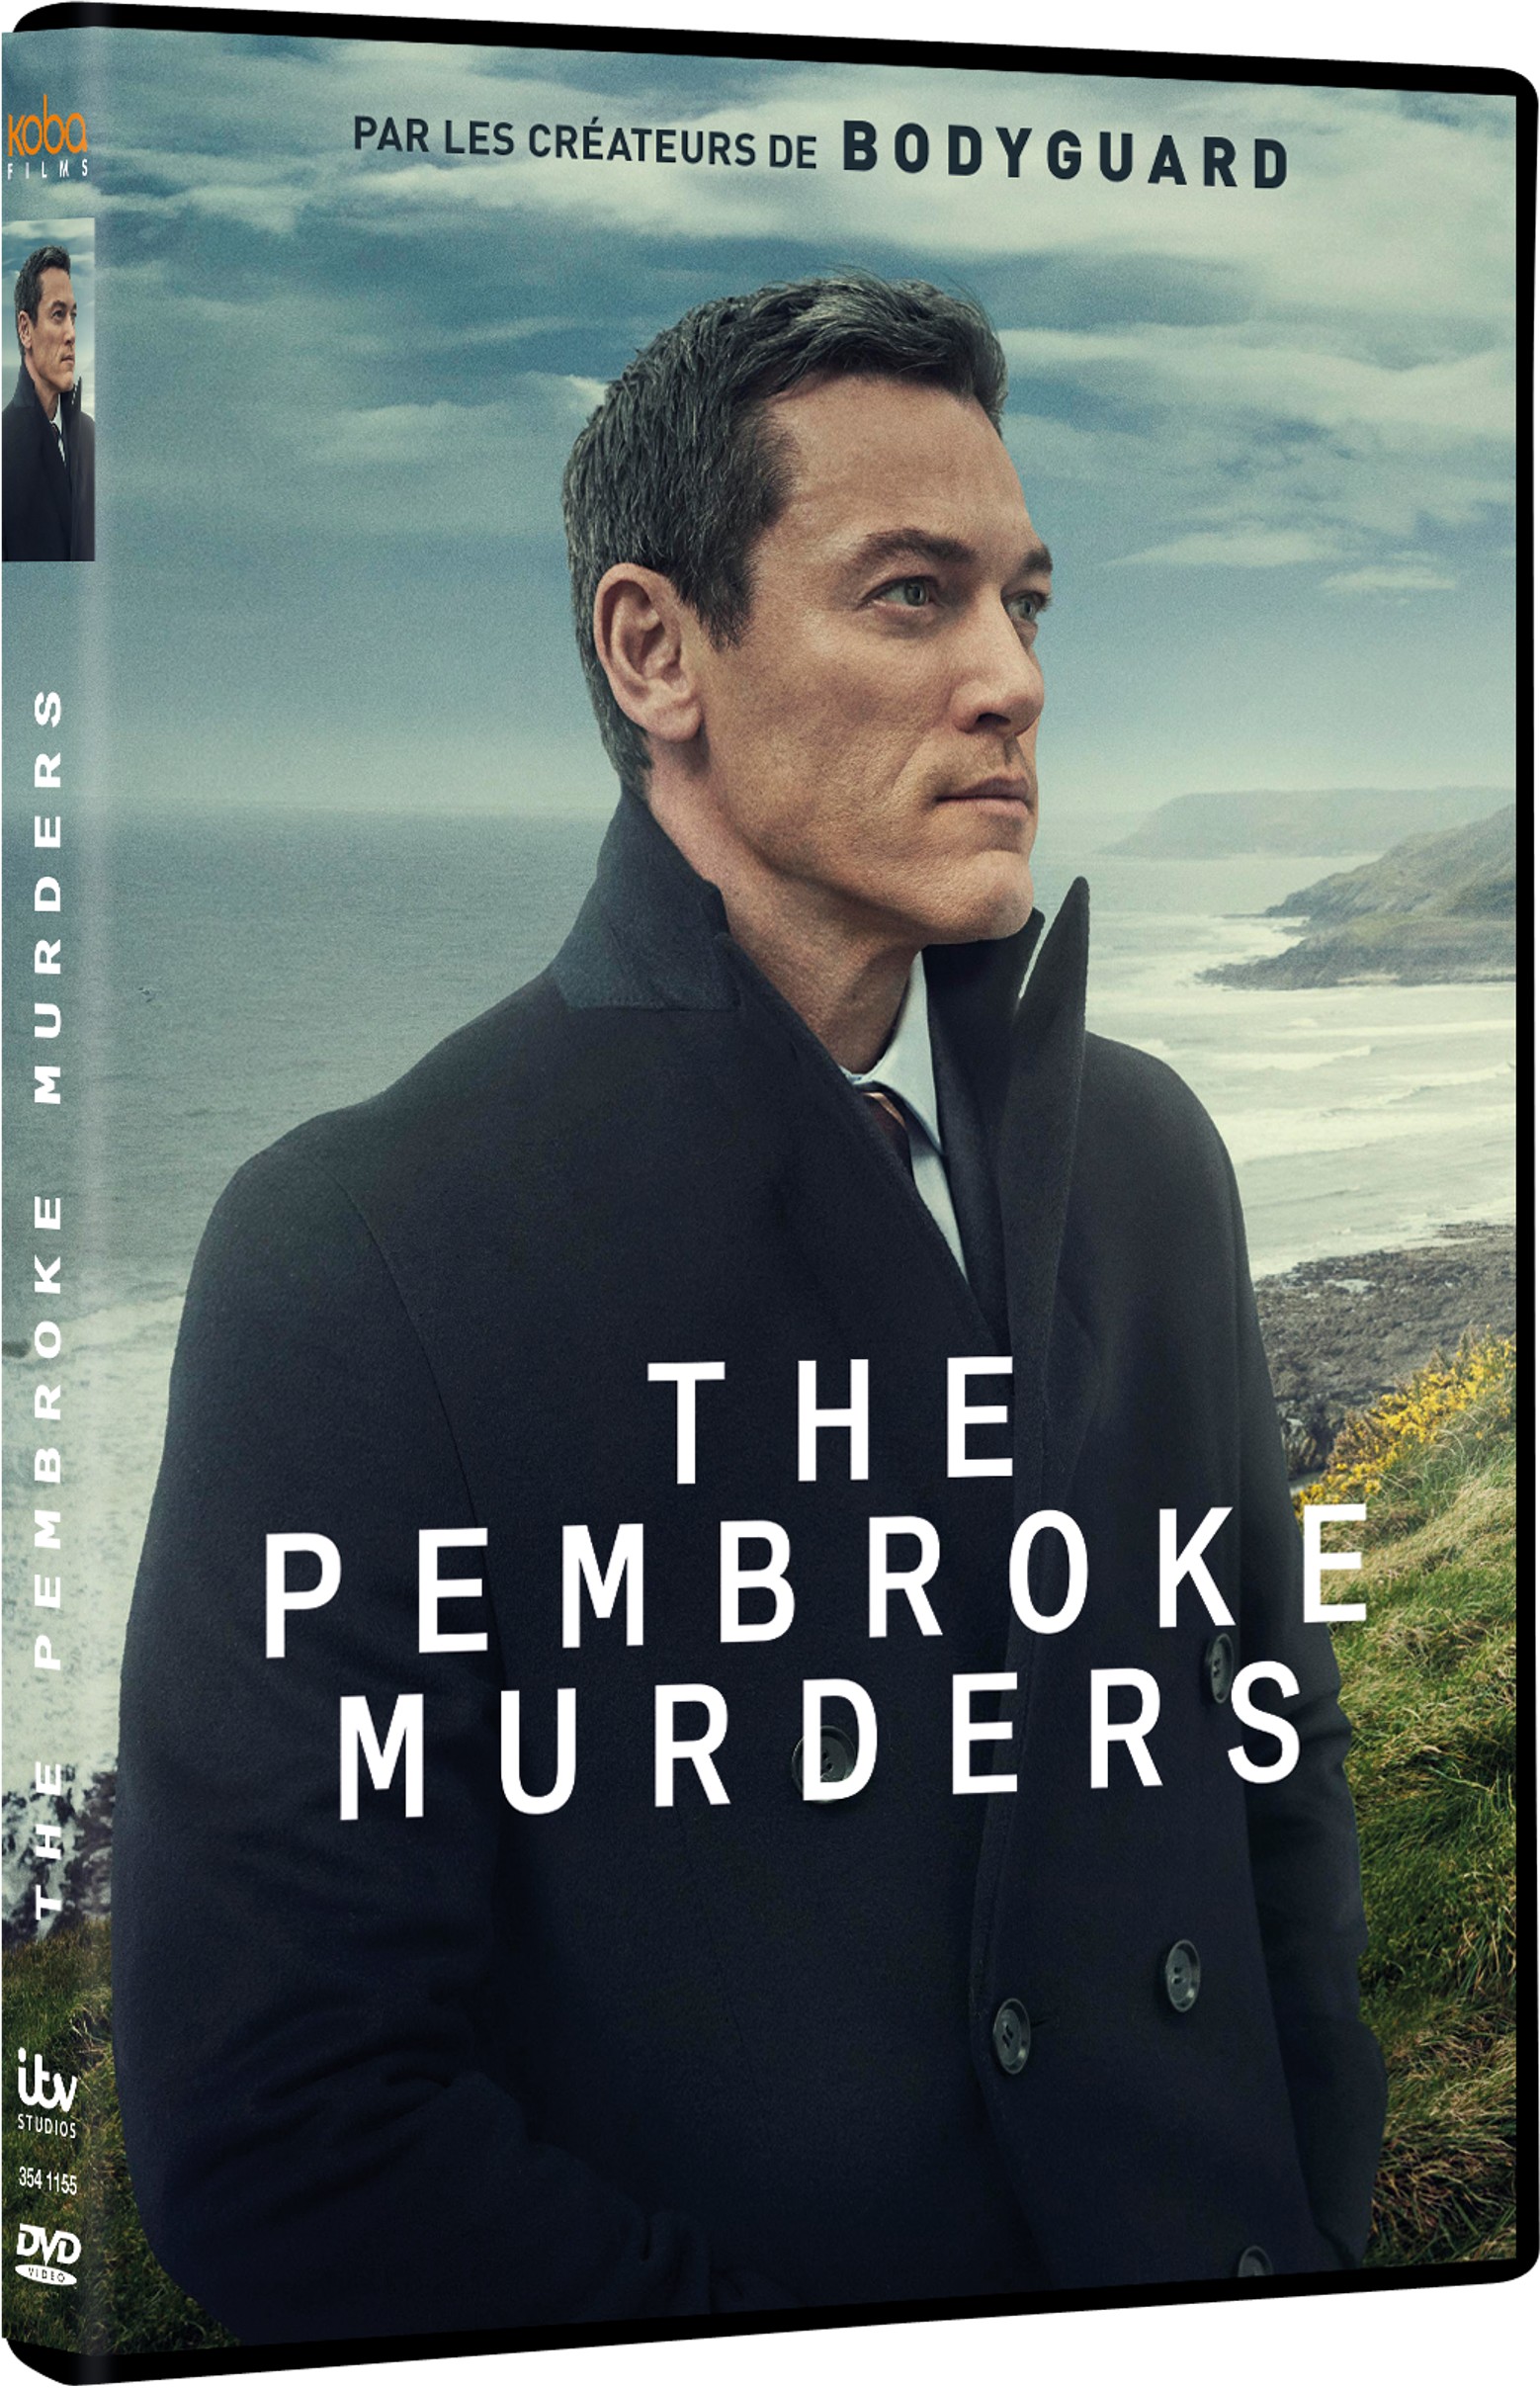 THE PEMBROKE MURDERS - DVD